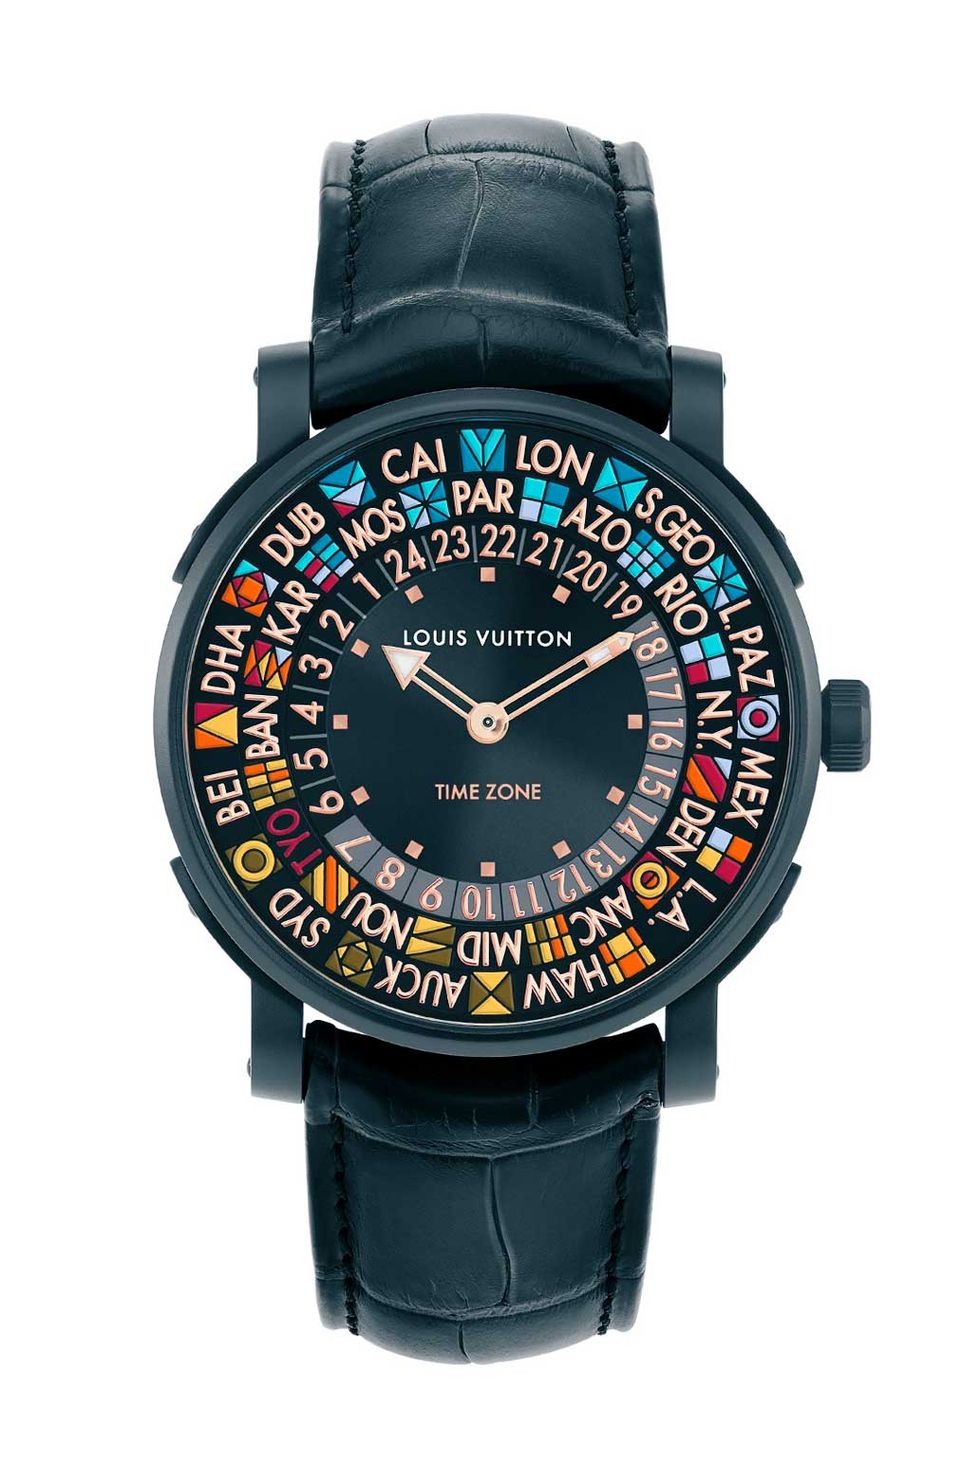 2021年新作時計 , 新作時計,  腕時計, 100万円以上 , 200万円以下,  腕時計, 時計, メンクラ